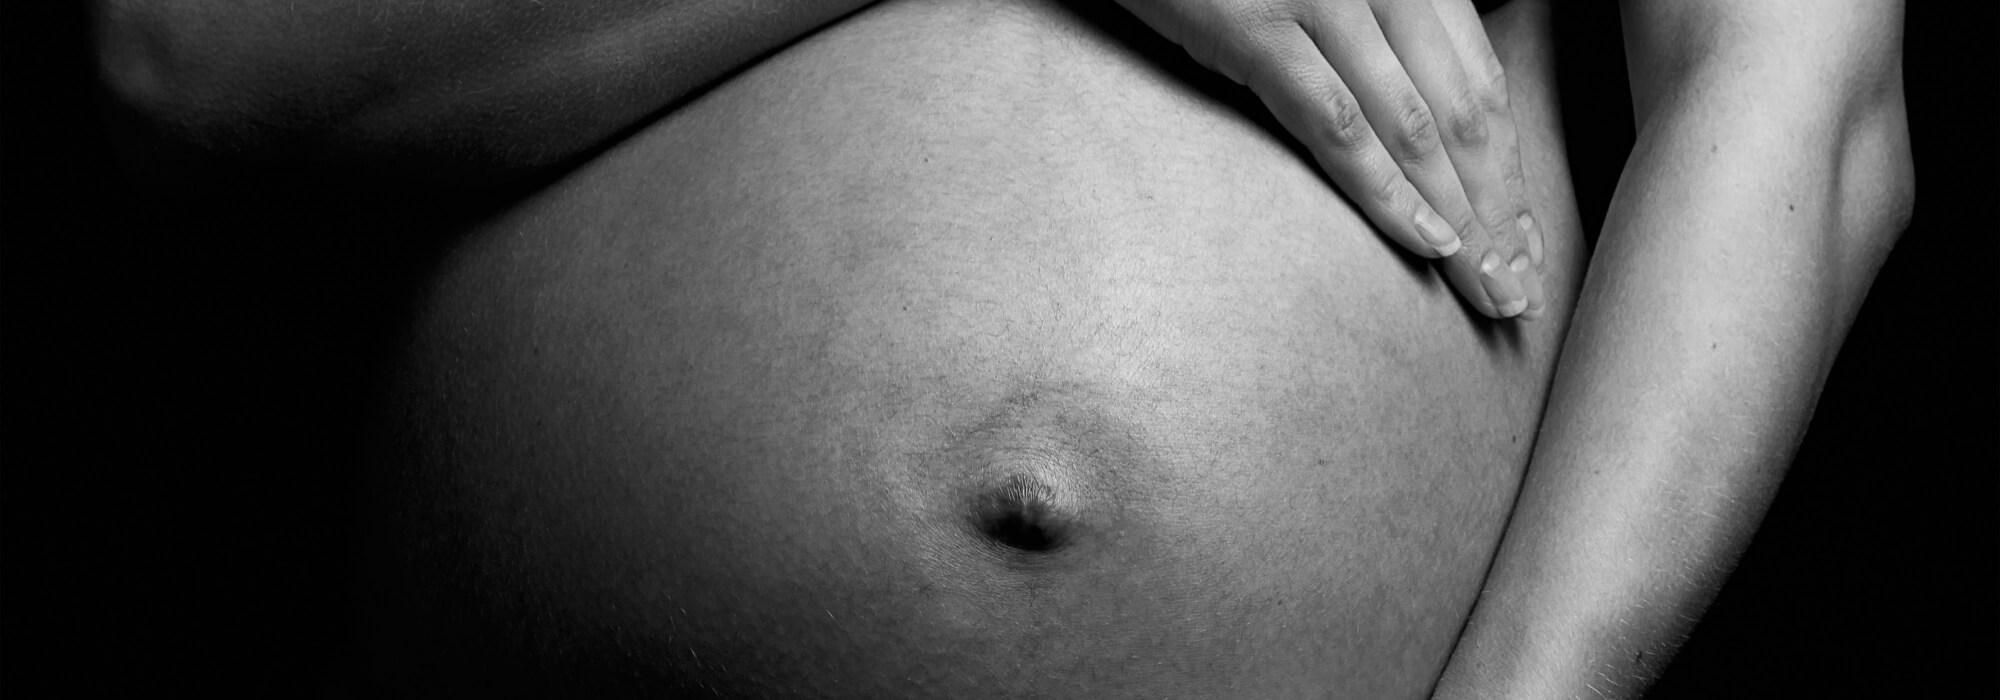 Jakie badania przed ciążą?